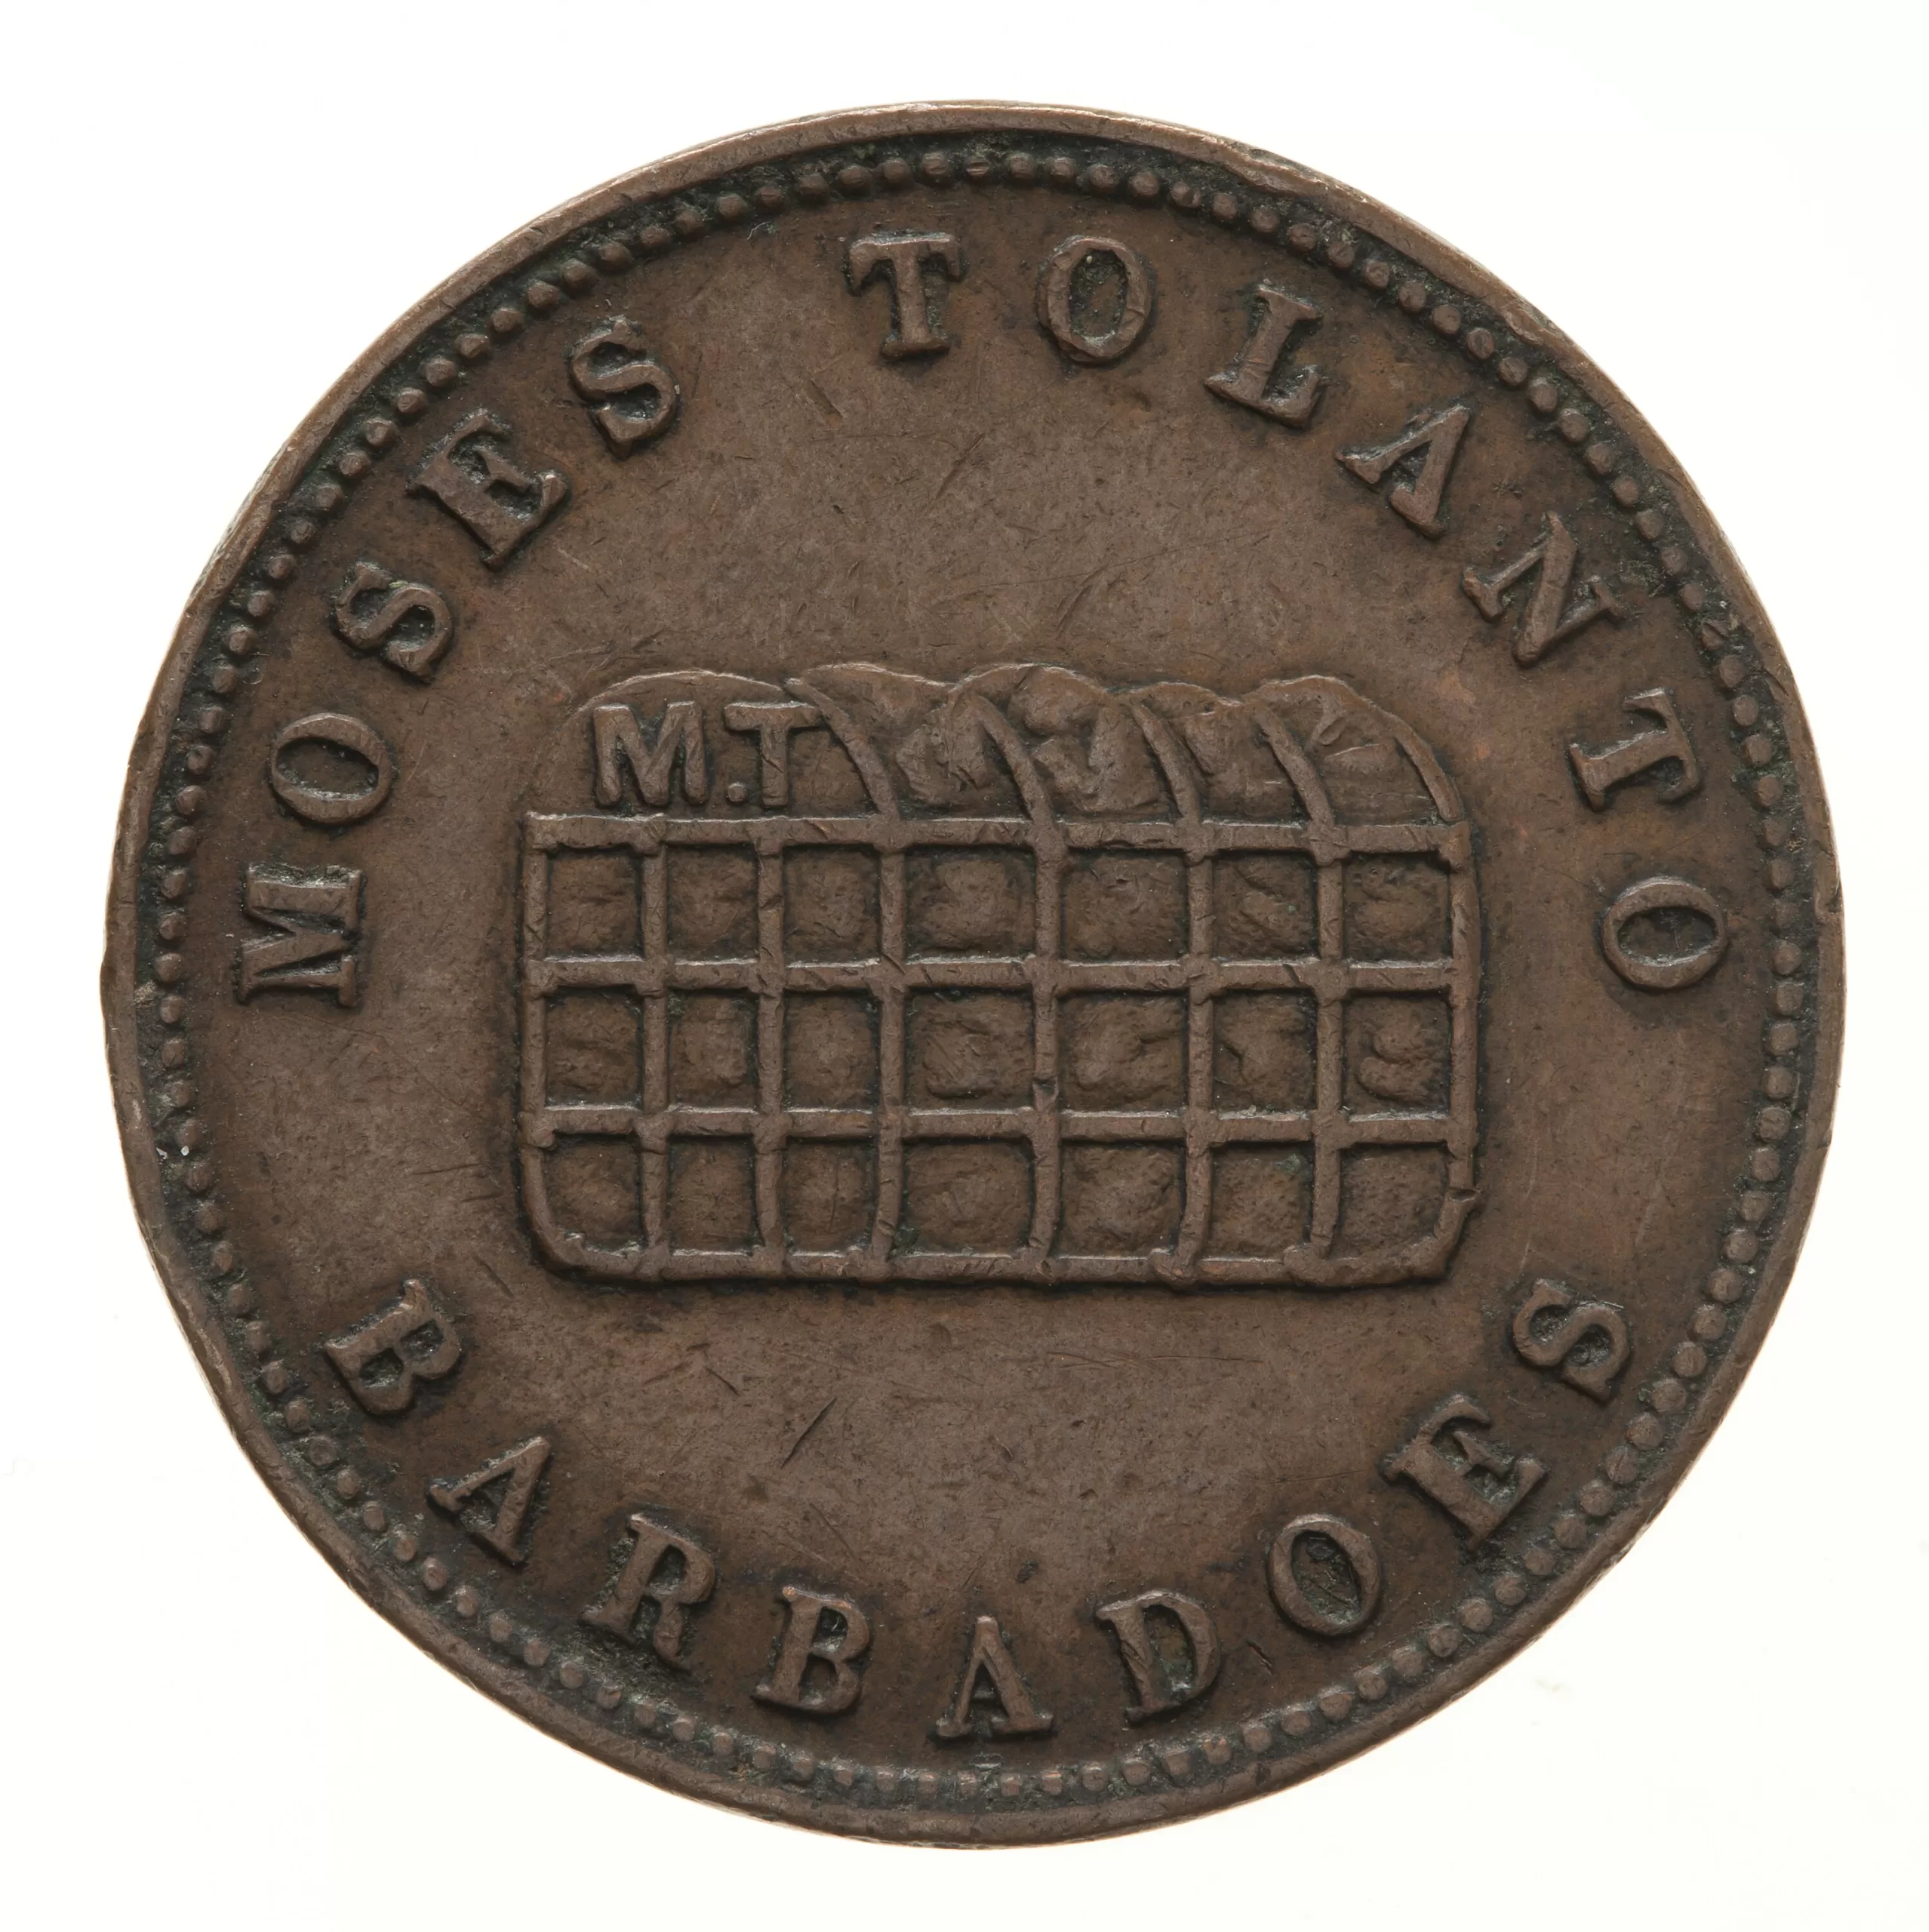 Token - 1/2 Penny, Moses Tolanto, Barbados, circa 1850